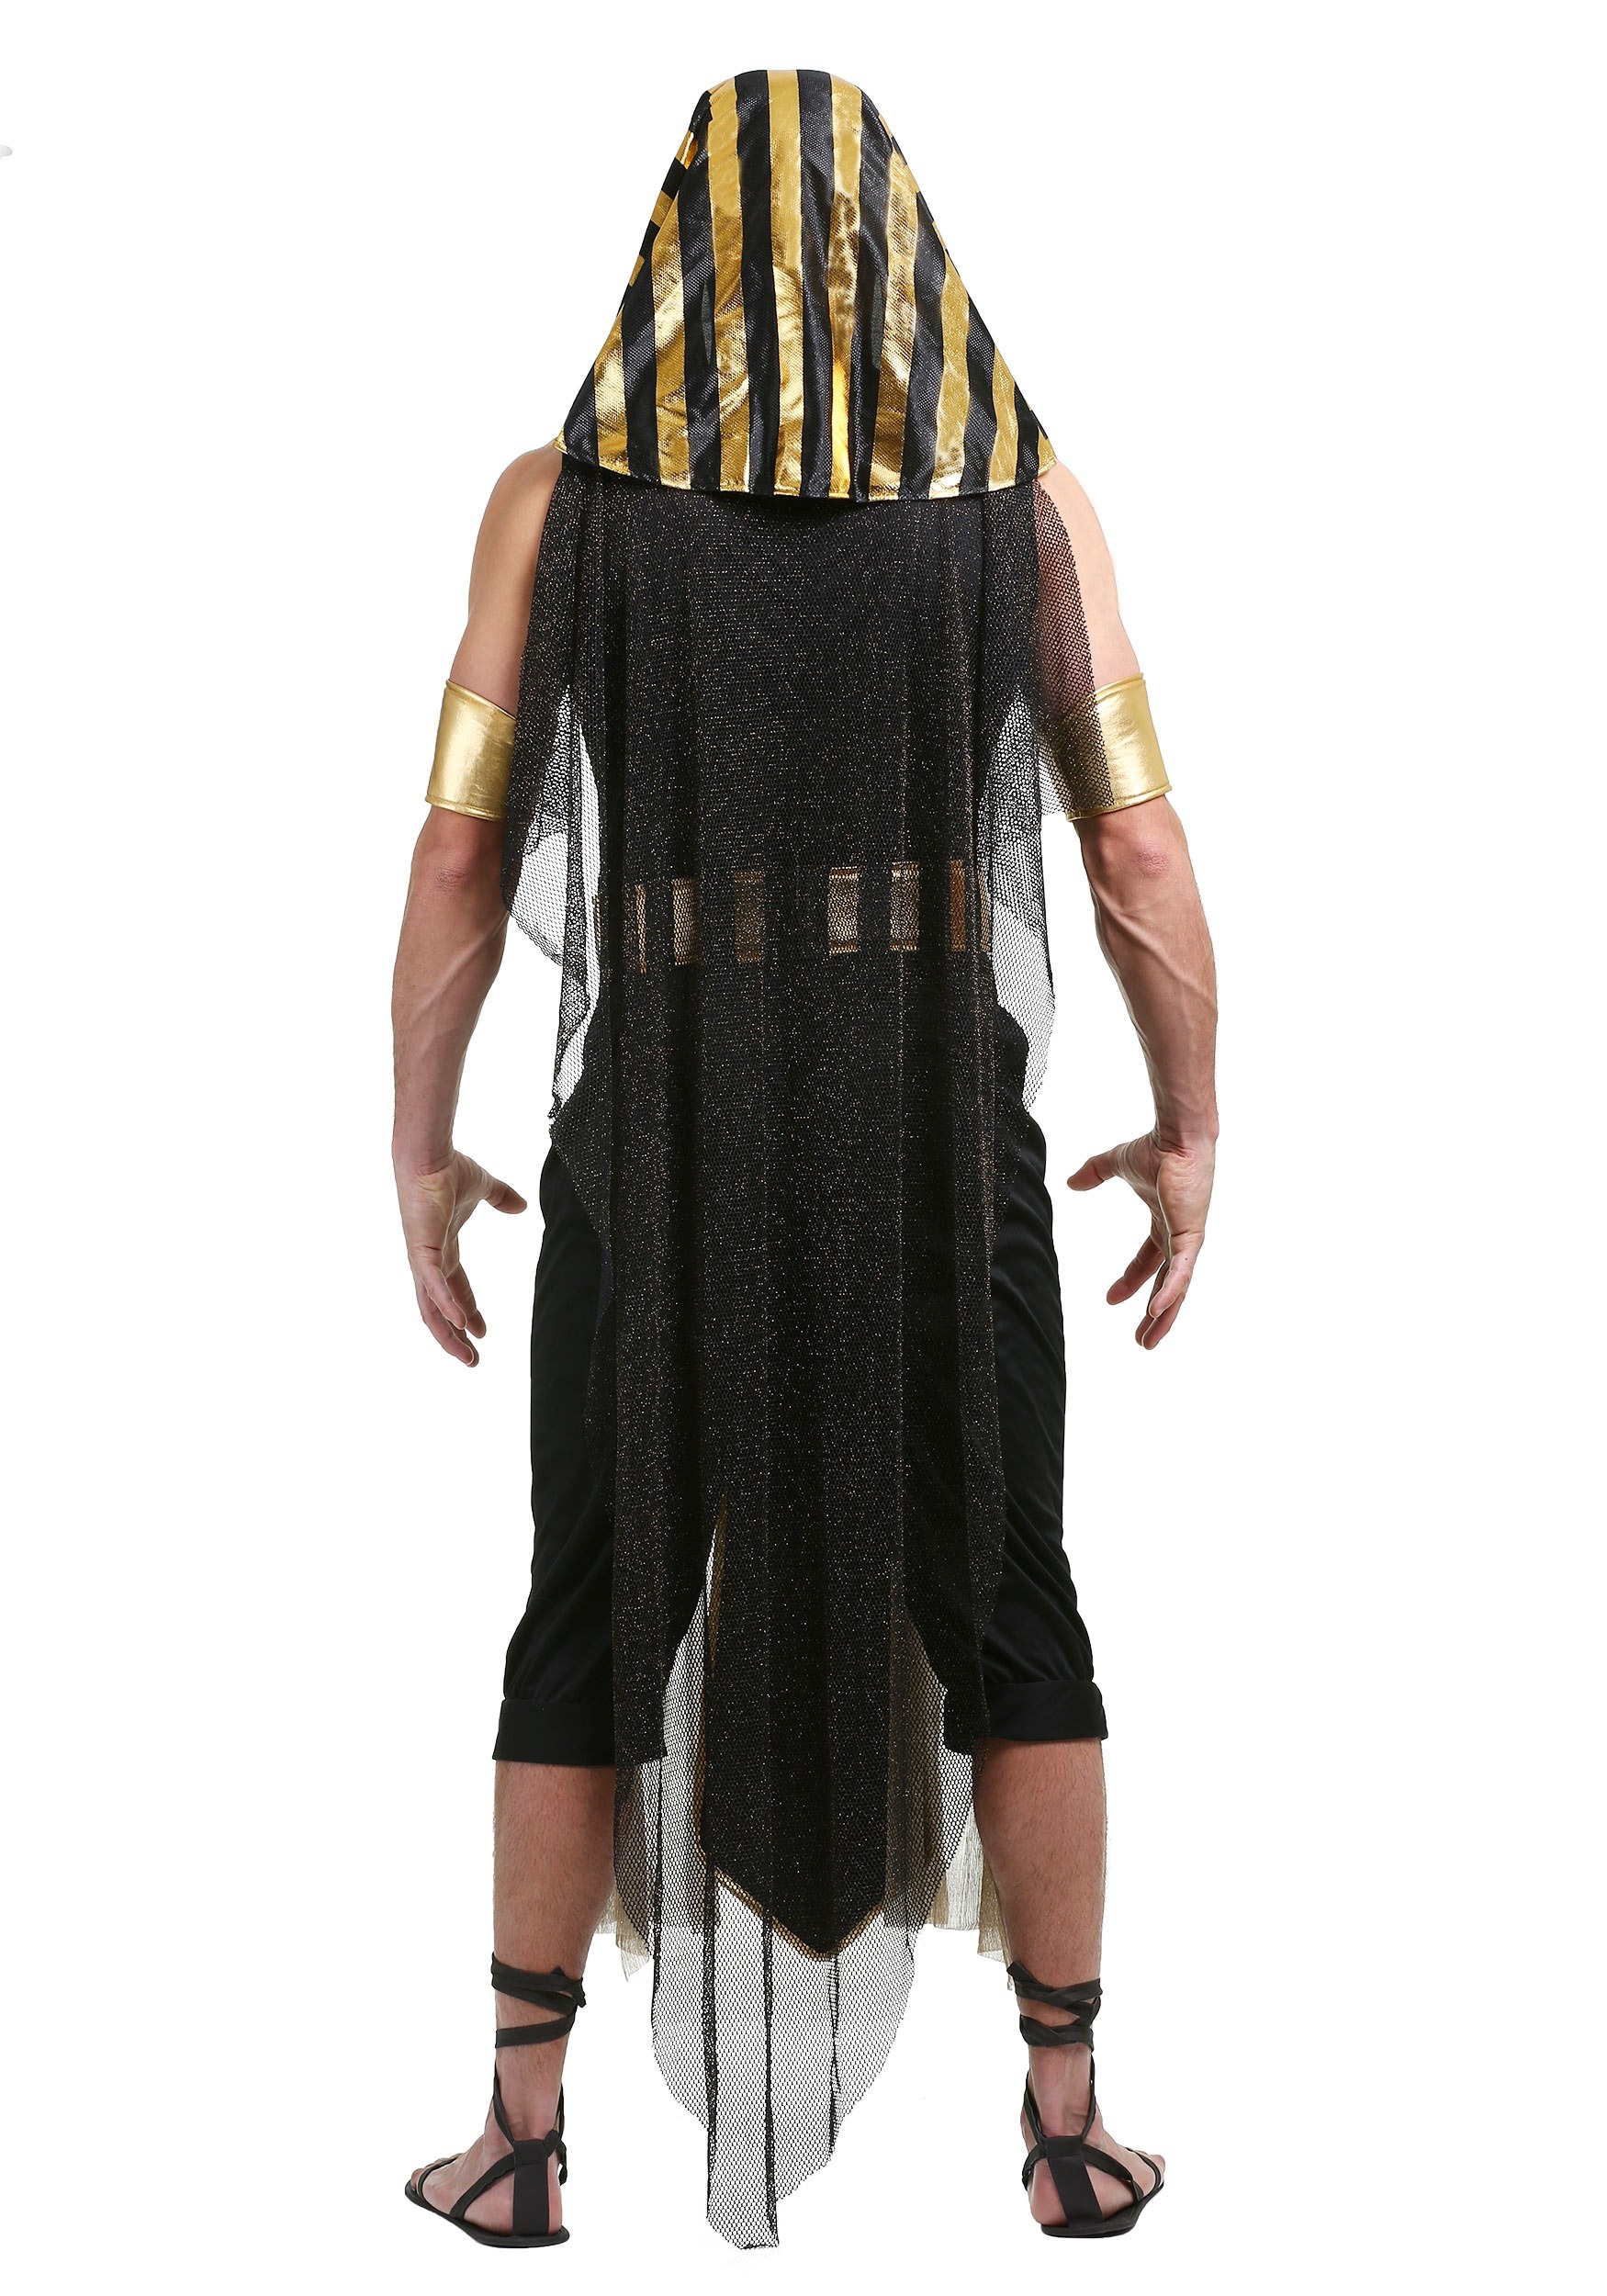 Details about  / Mens Egyptian Pharaoh Costume Pharoh King Tut Deluxe Outfit Pharoah Egypt Adult